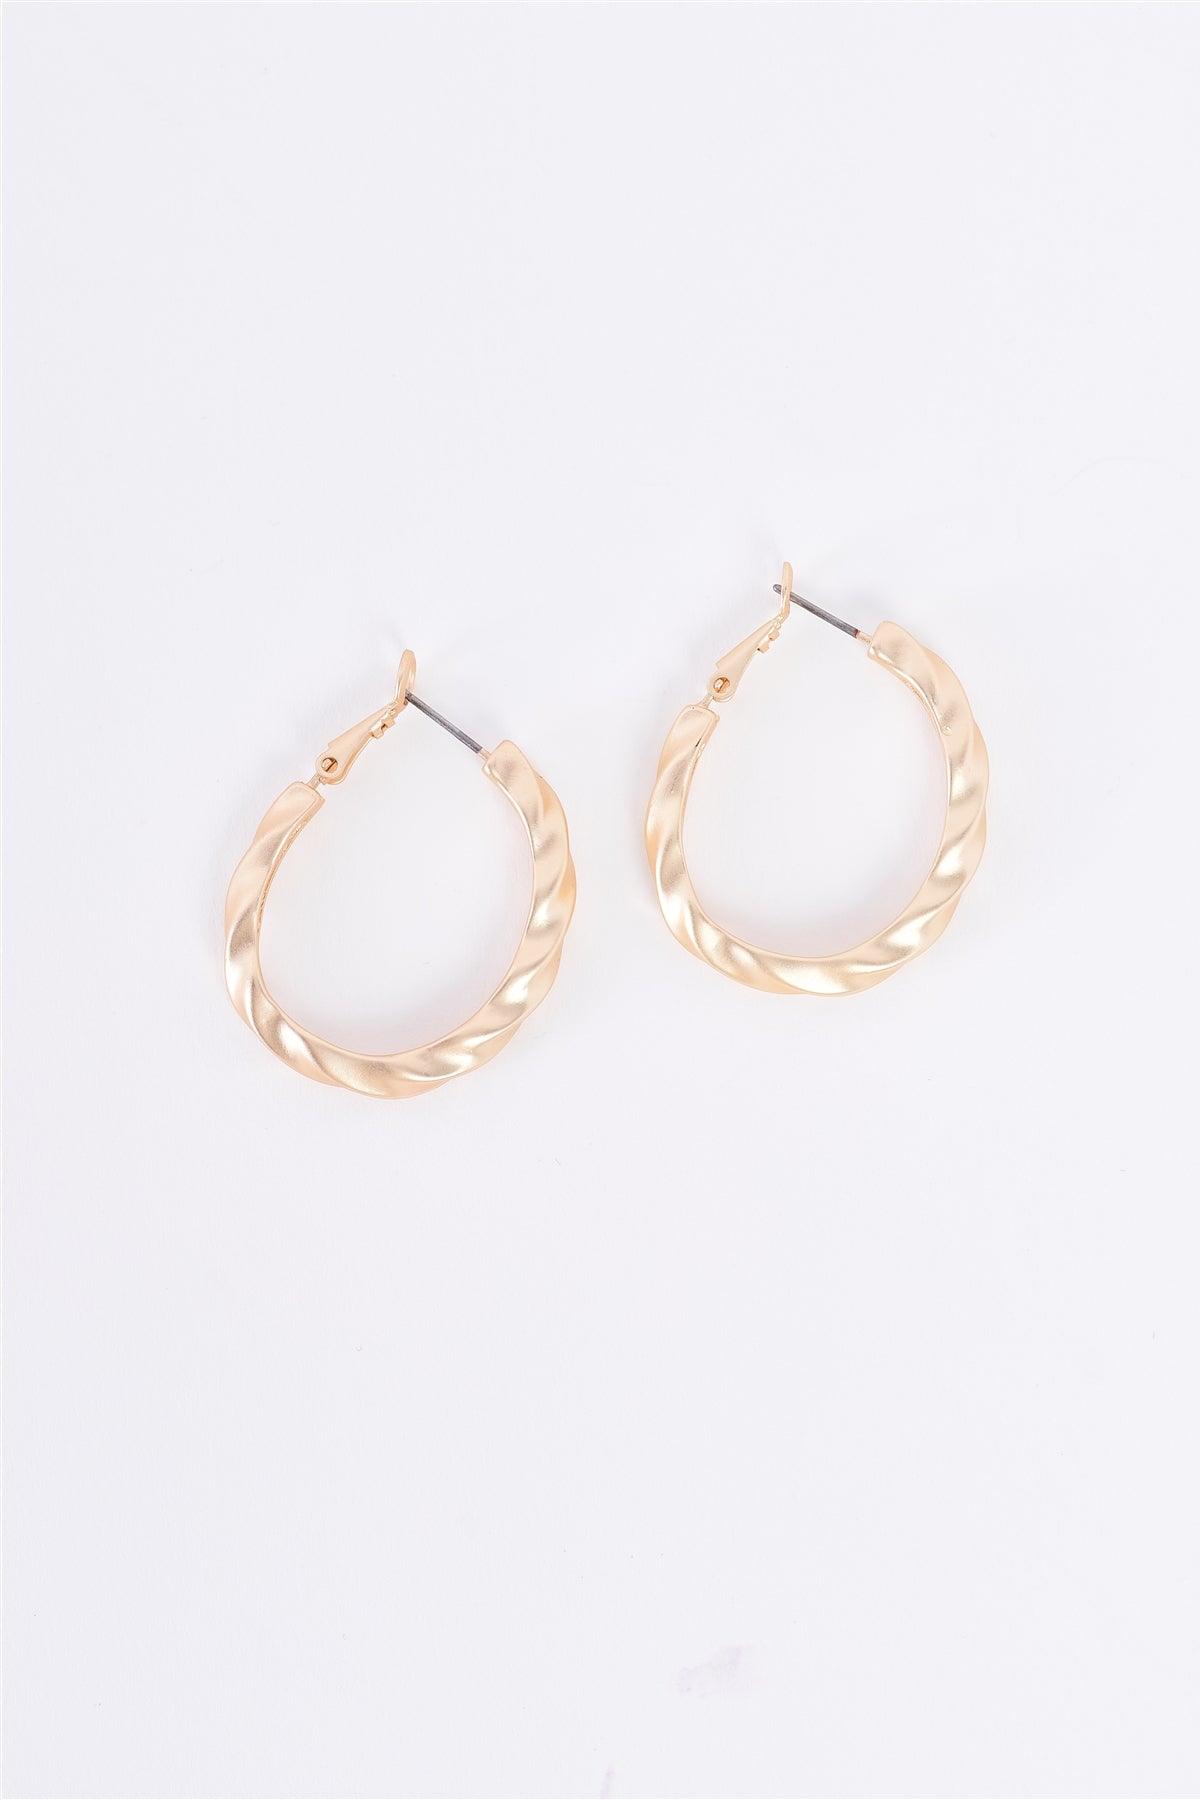 Matte Gold Twisted Hoop Earrings /3 Pairs